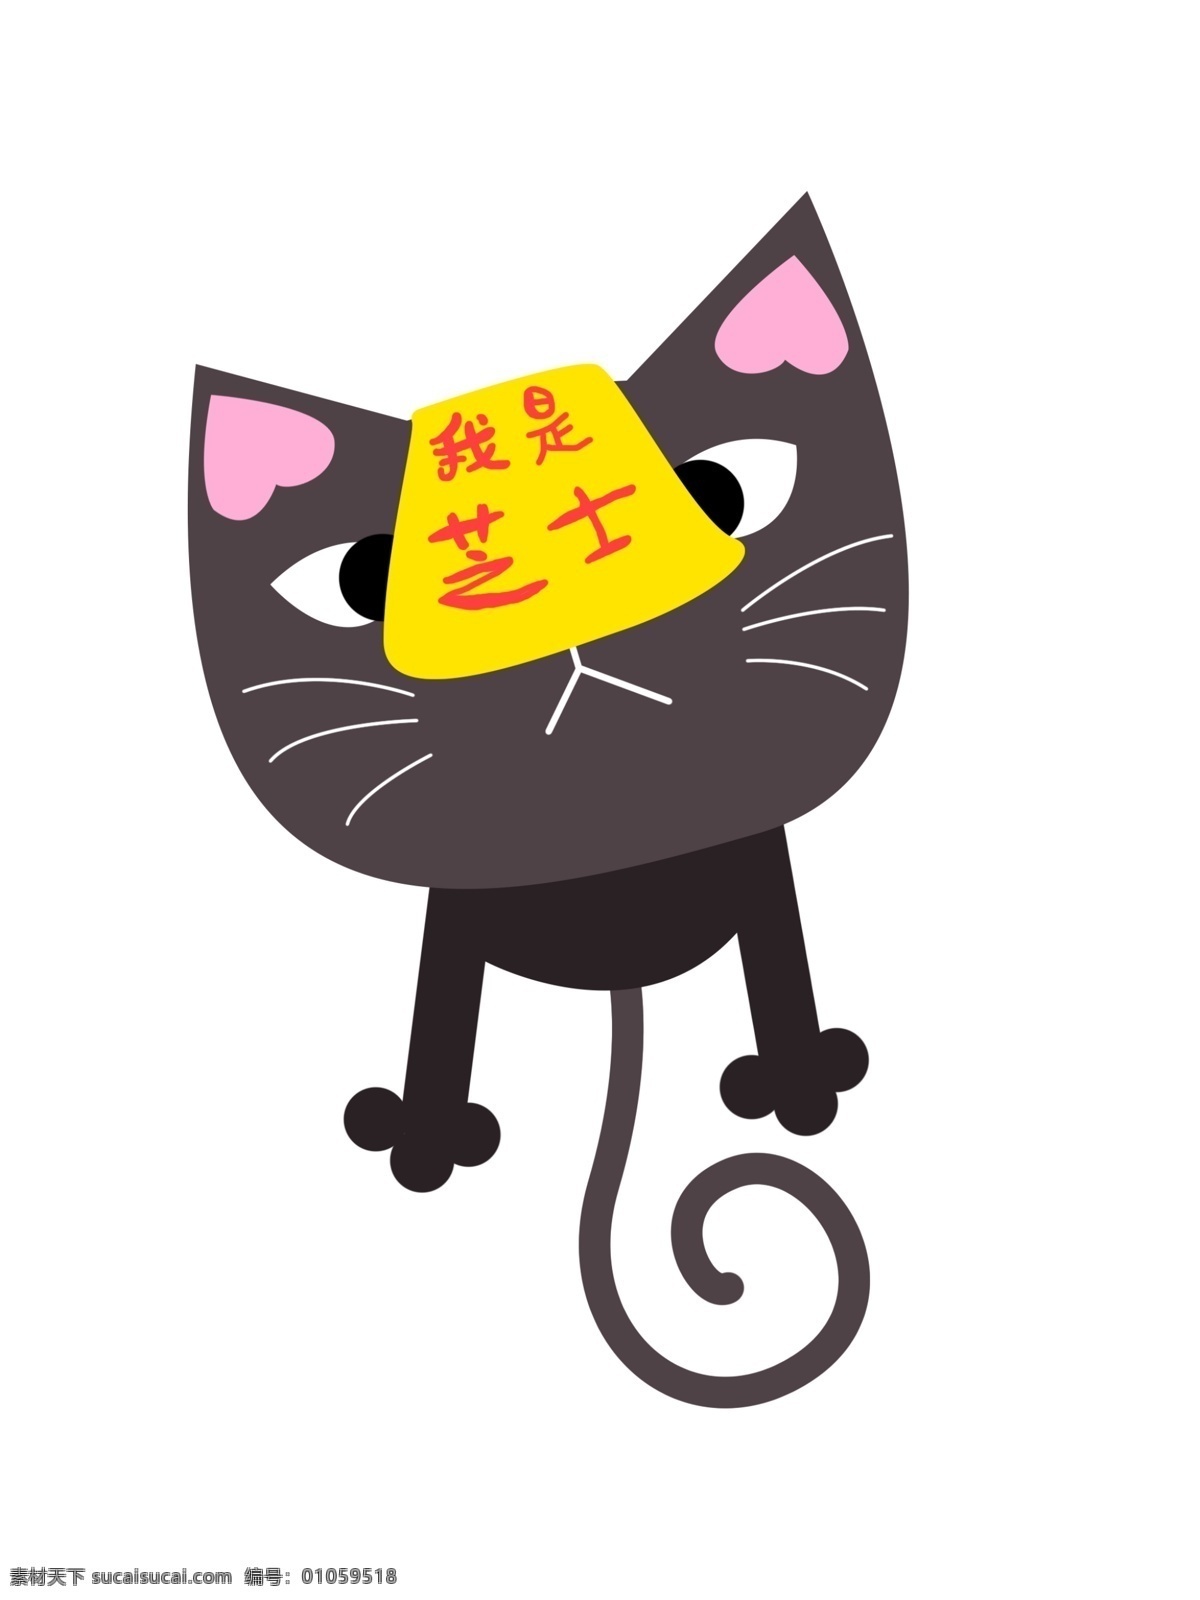 芝士 黑猫 卡通 形象 帆布 袋 包装 芝士卡通 黑猫卡通 卡通猫 包装设计 帆布袋设计 封面设计